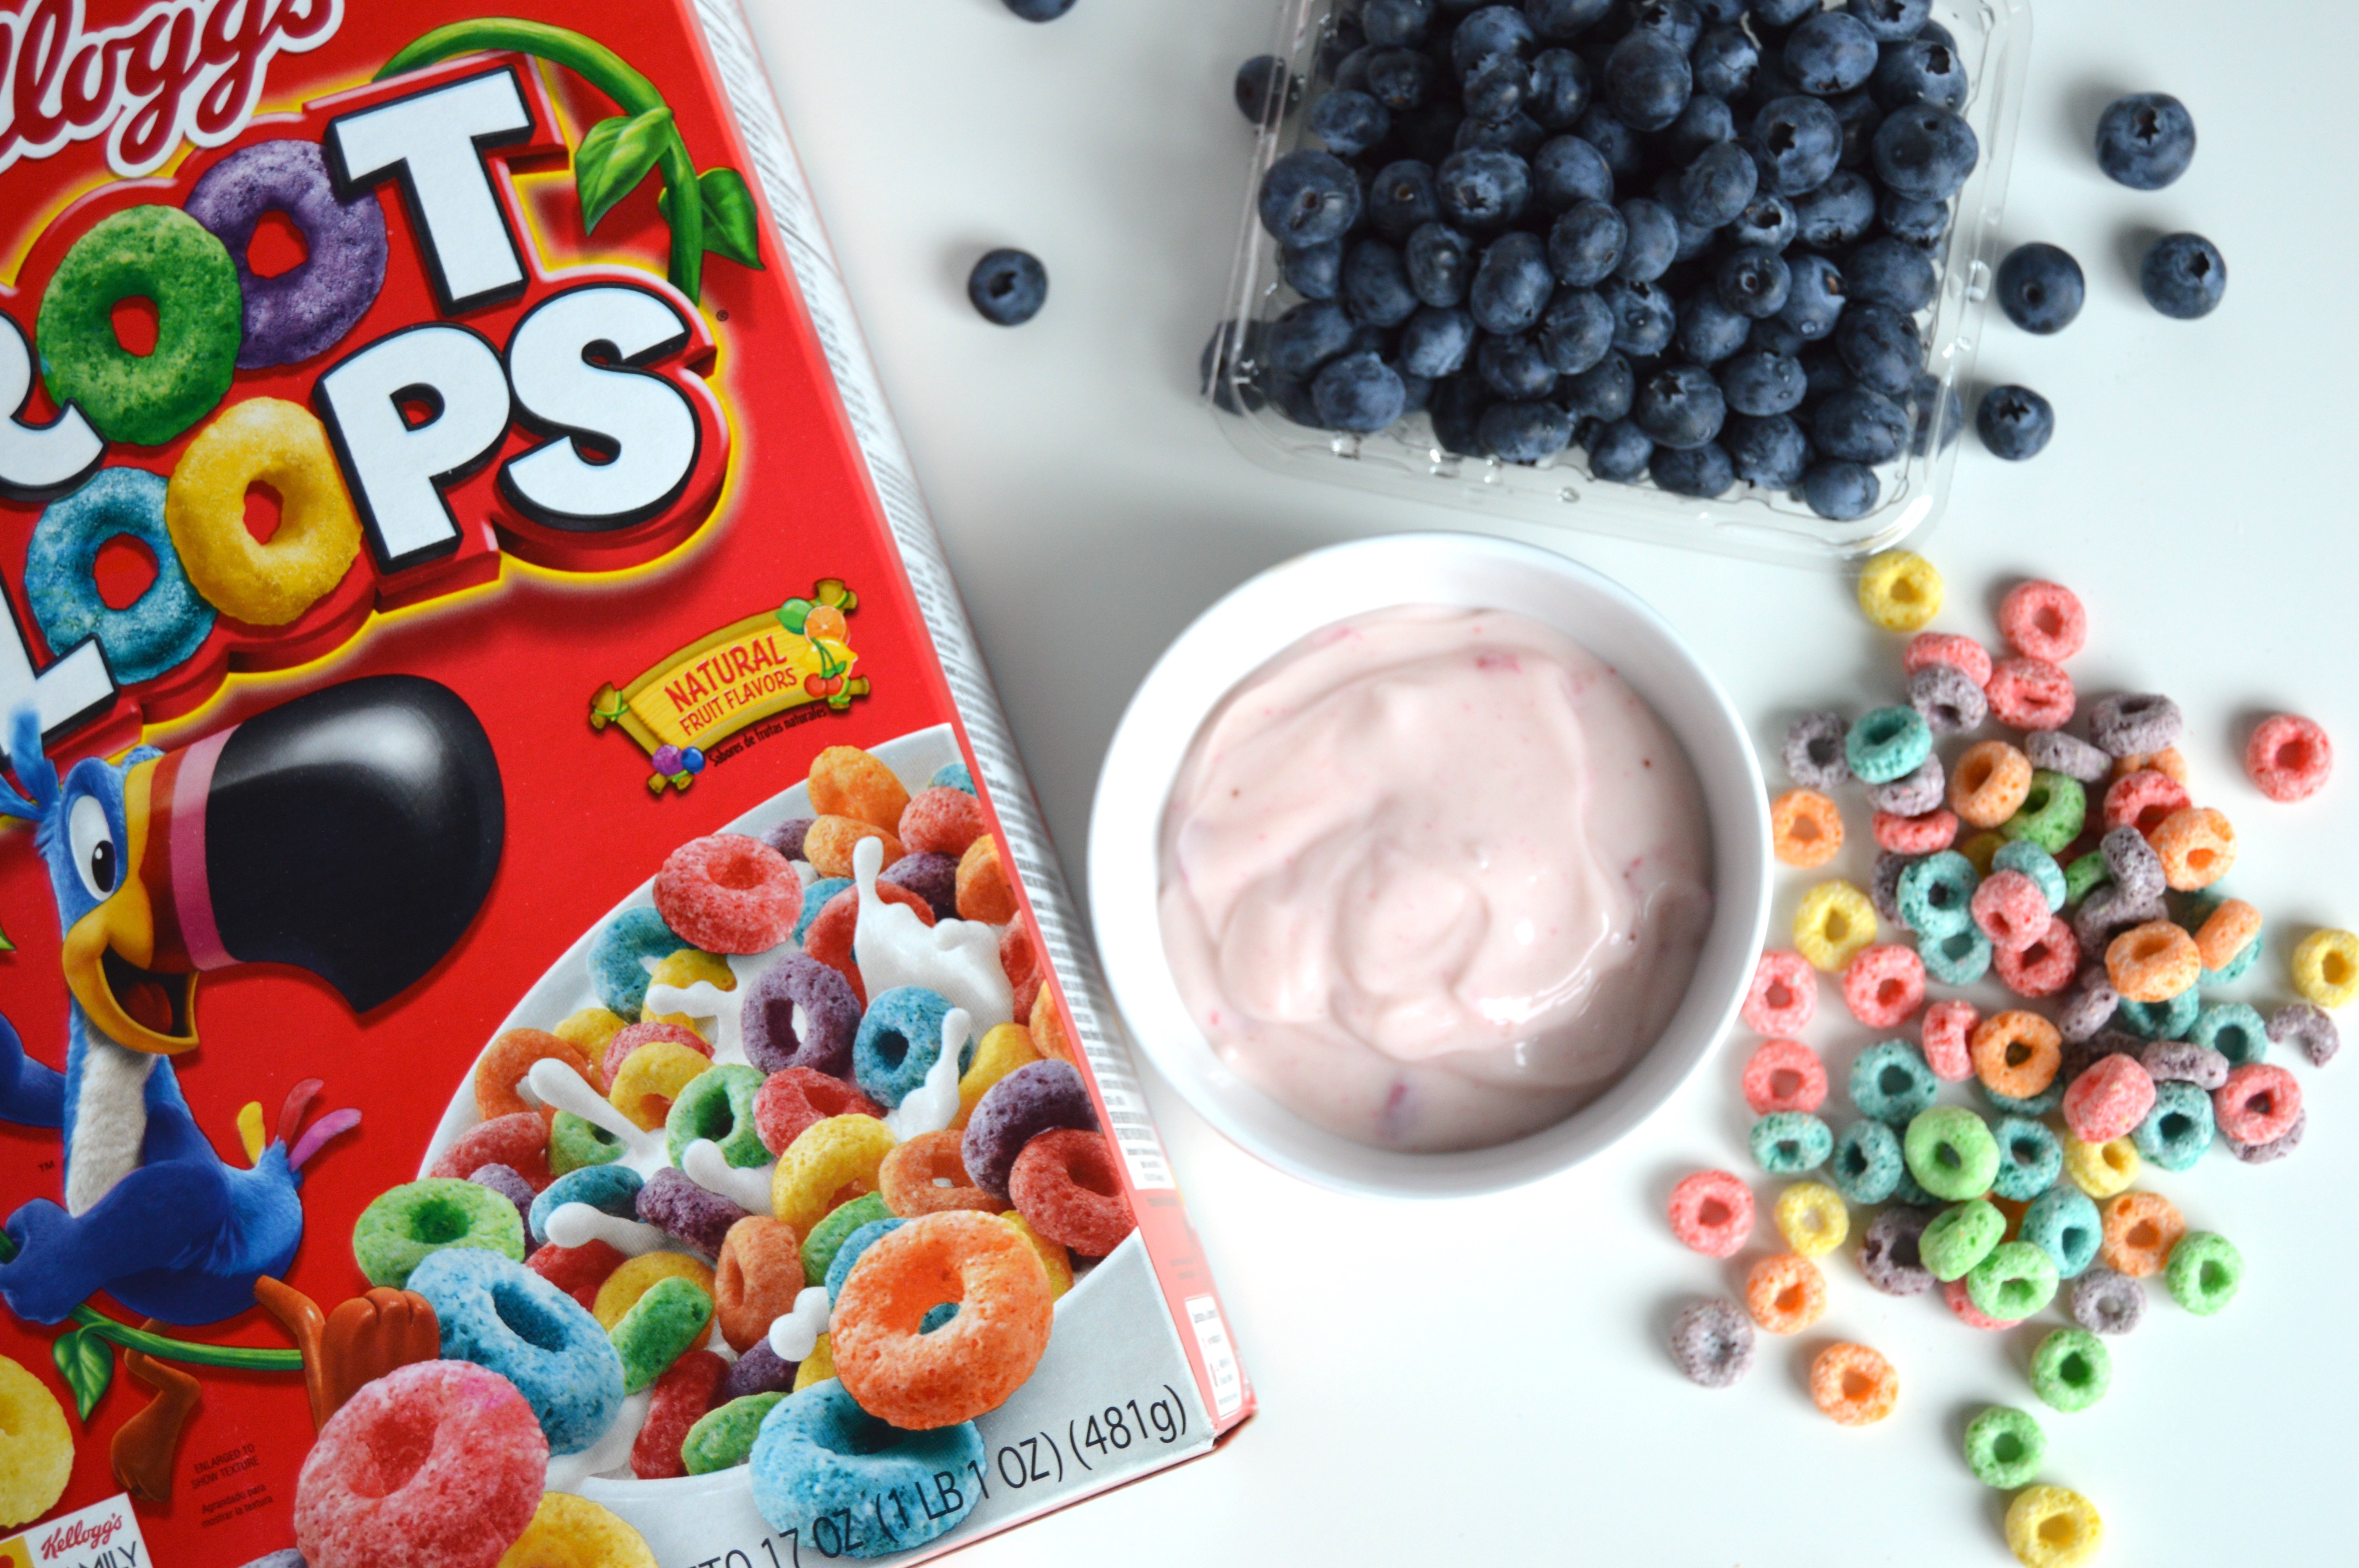 Froot Loops Cereal Yogurt Parfait ingredients: Froot Loops, strawberry yogurt, and blueberries